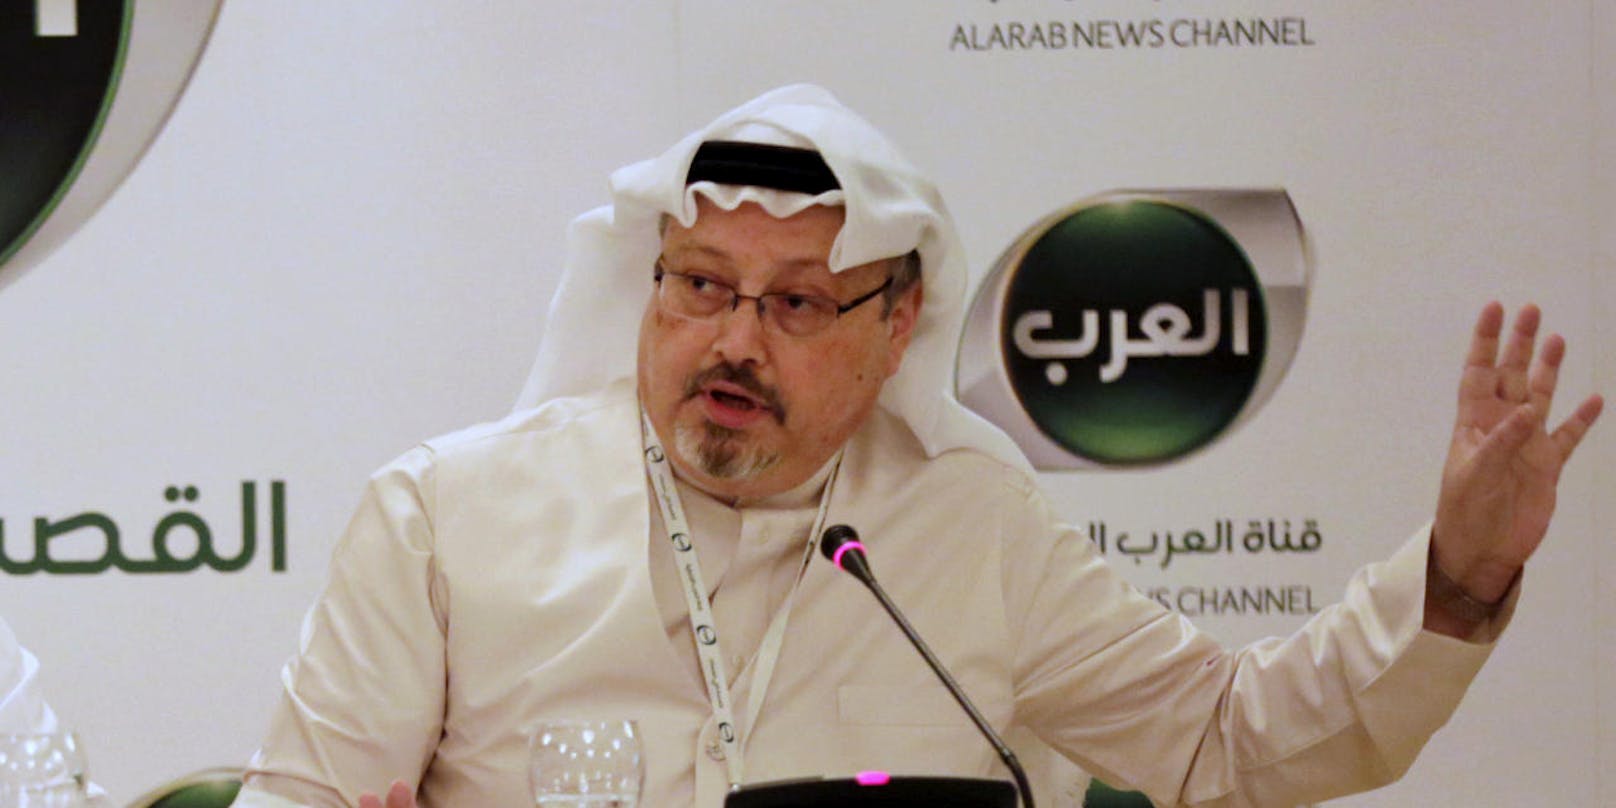 Saudi-Arabien hat am 19. Oktober den Tod des seit Wochen verschwundenen Journalisten Jamal Khashoggi bestätigt. Im Bild: Khashoggi während einer Konferenz in Manama, Bahrein im Februar 2015.